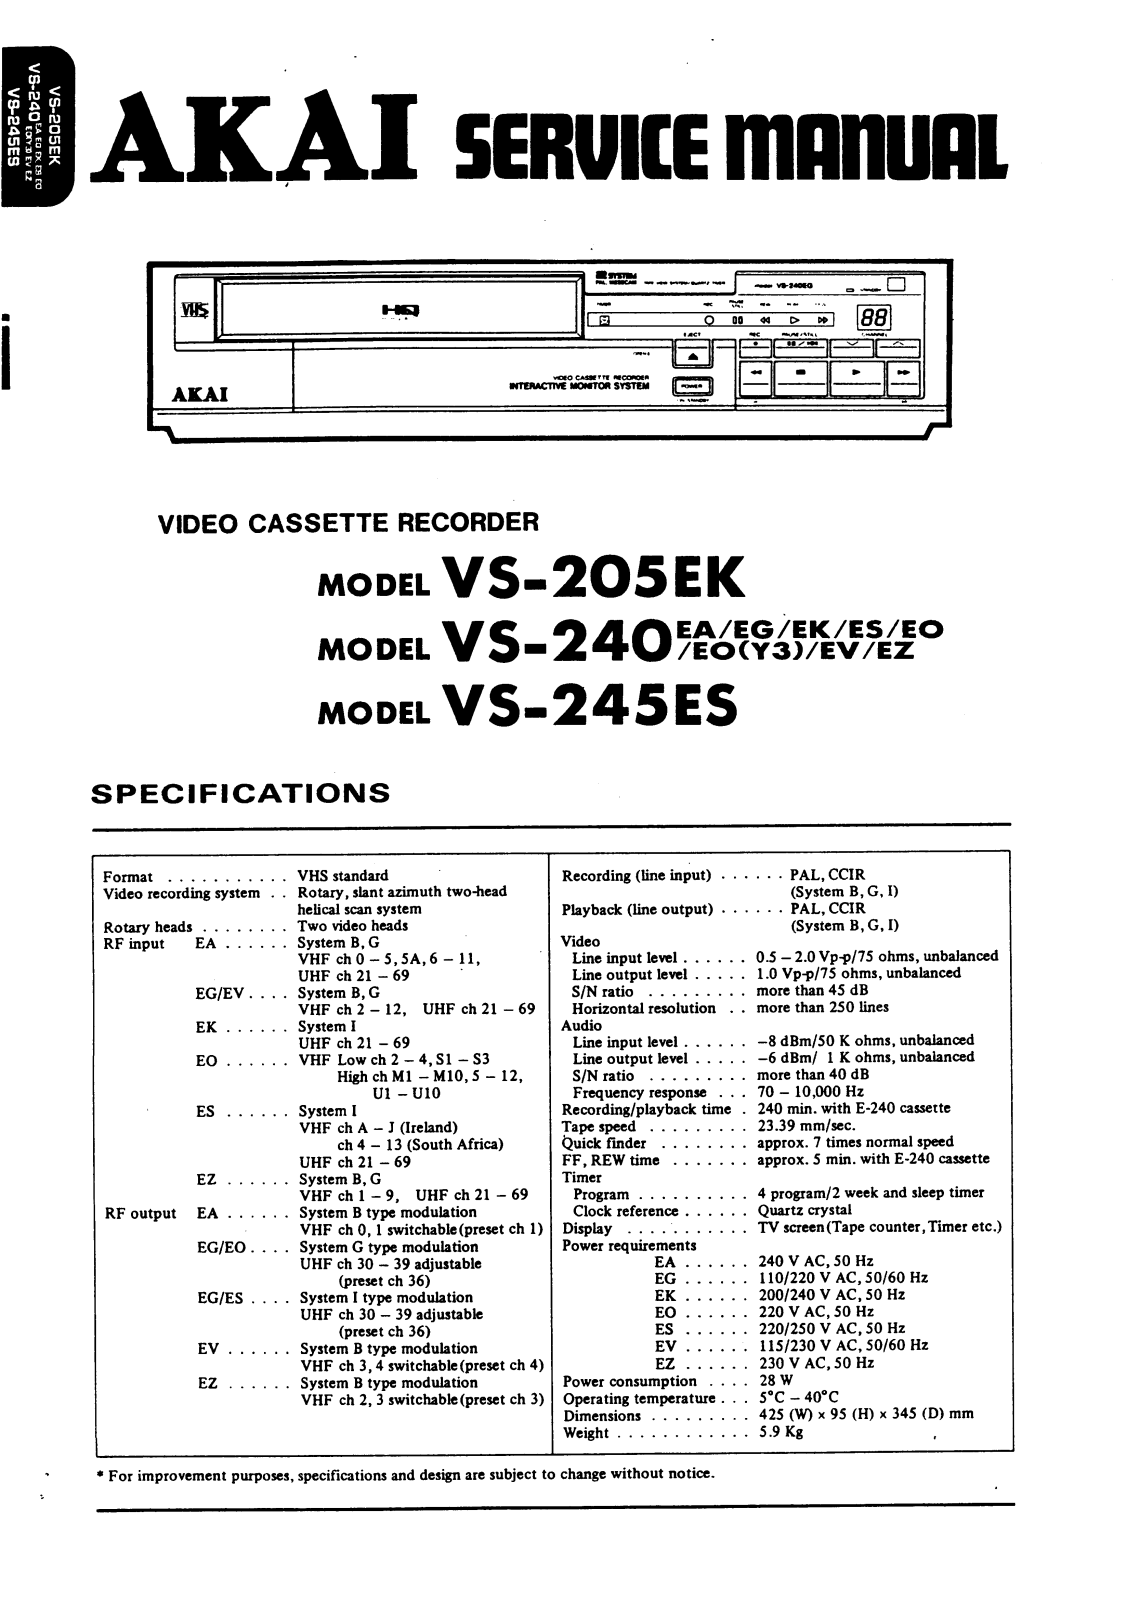 Akai VS-245ES, VS-240, VS-205EK Service Manual